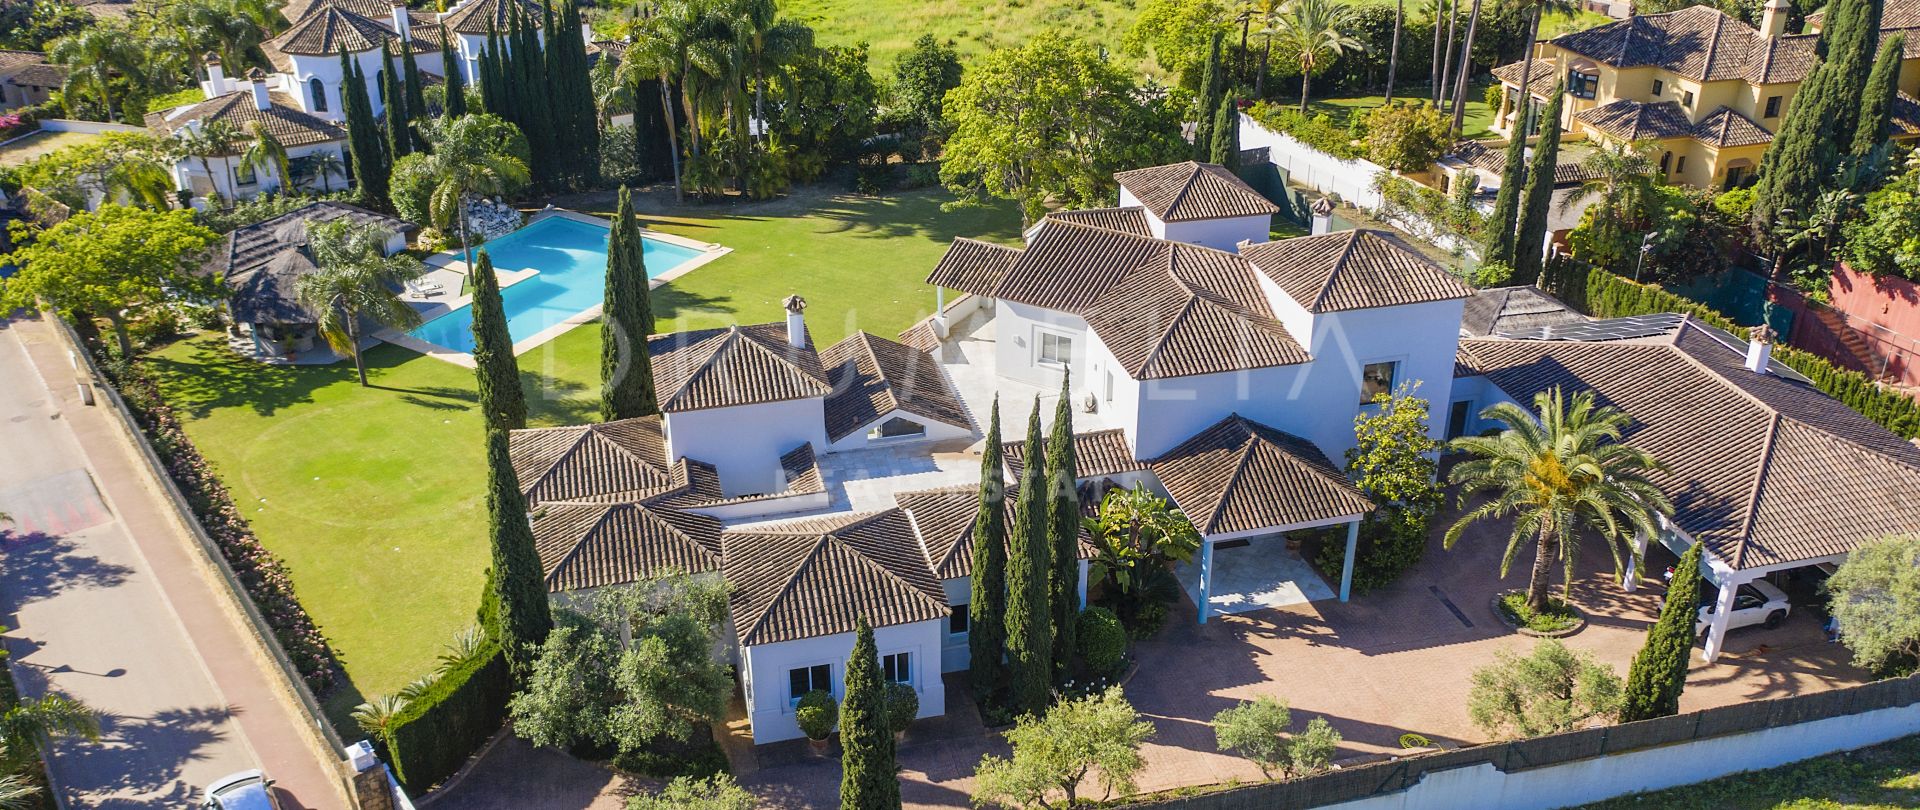 Prachtige luxe mediterrane villa met groot perceel in het elitaire Guadalmina Baja, San Pedro, Marbella.